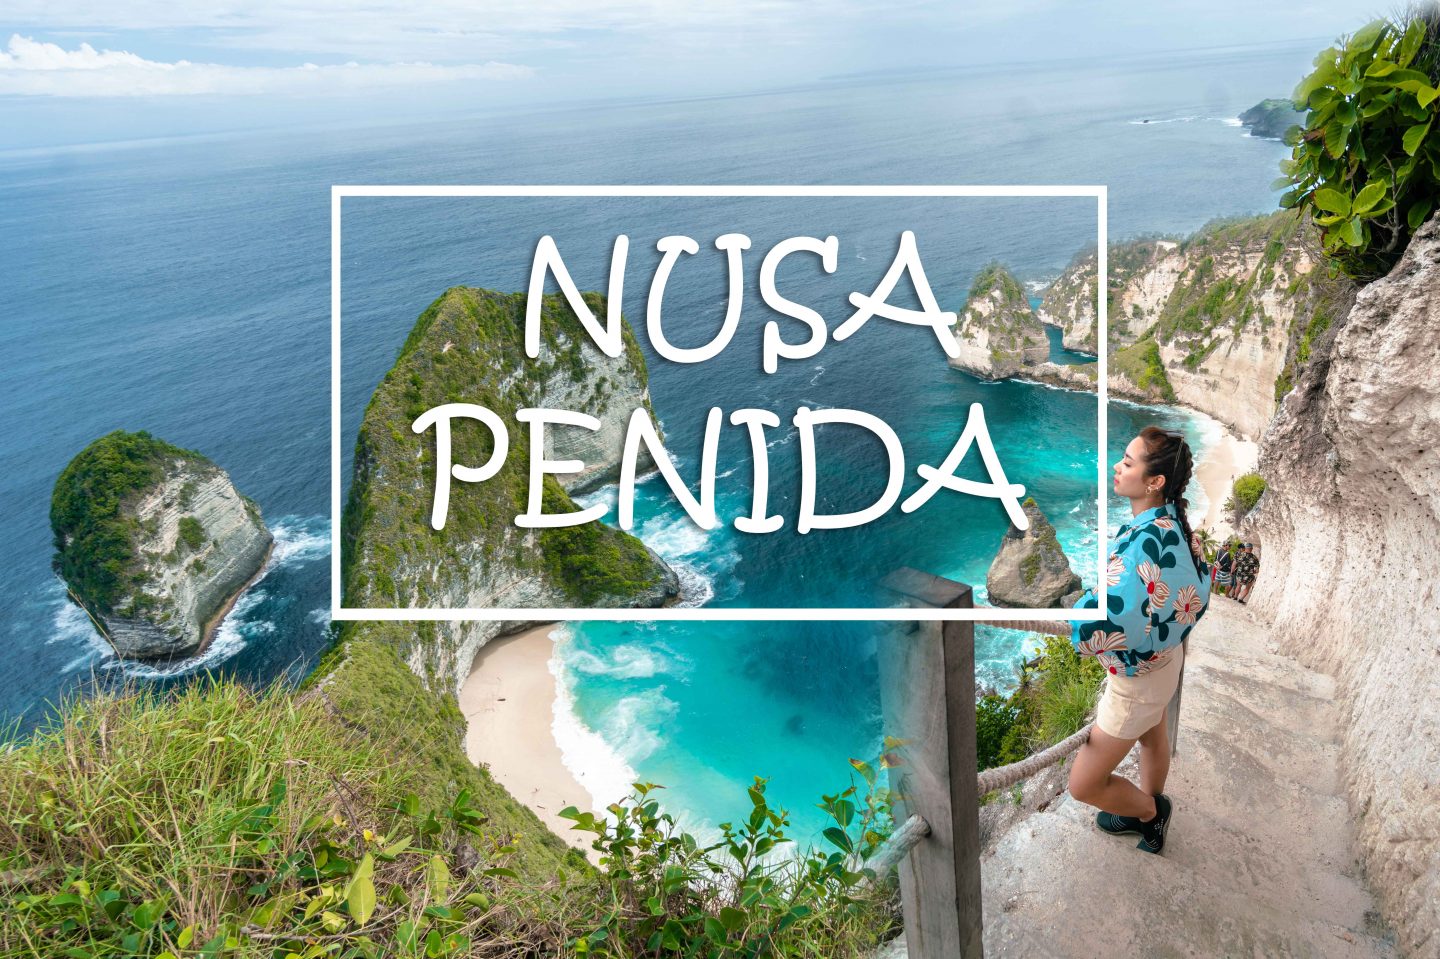 Khám phá Bali #2: Nusa Penida – Hòn đảo có núi và biển đẹp nhất Bali